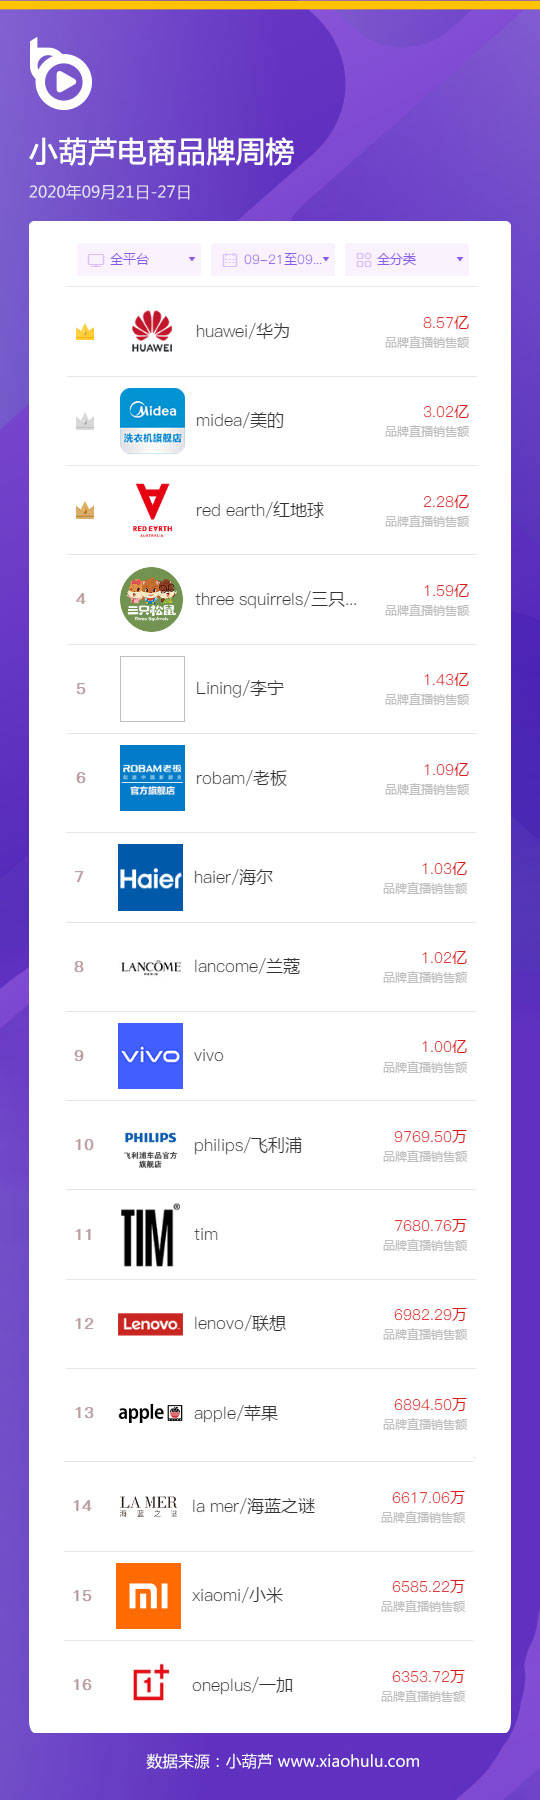 淘宝产品销量排行榜_天猫双11全行业品牌销售排行榜出炉!